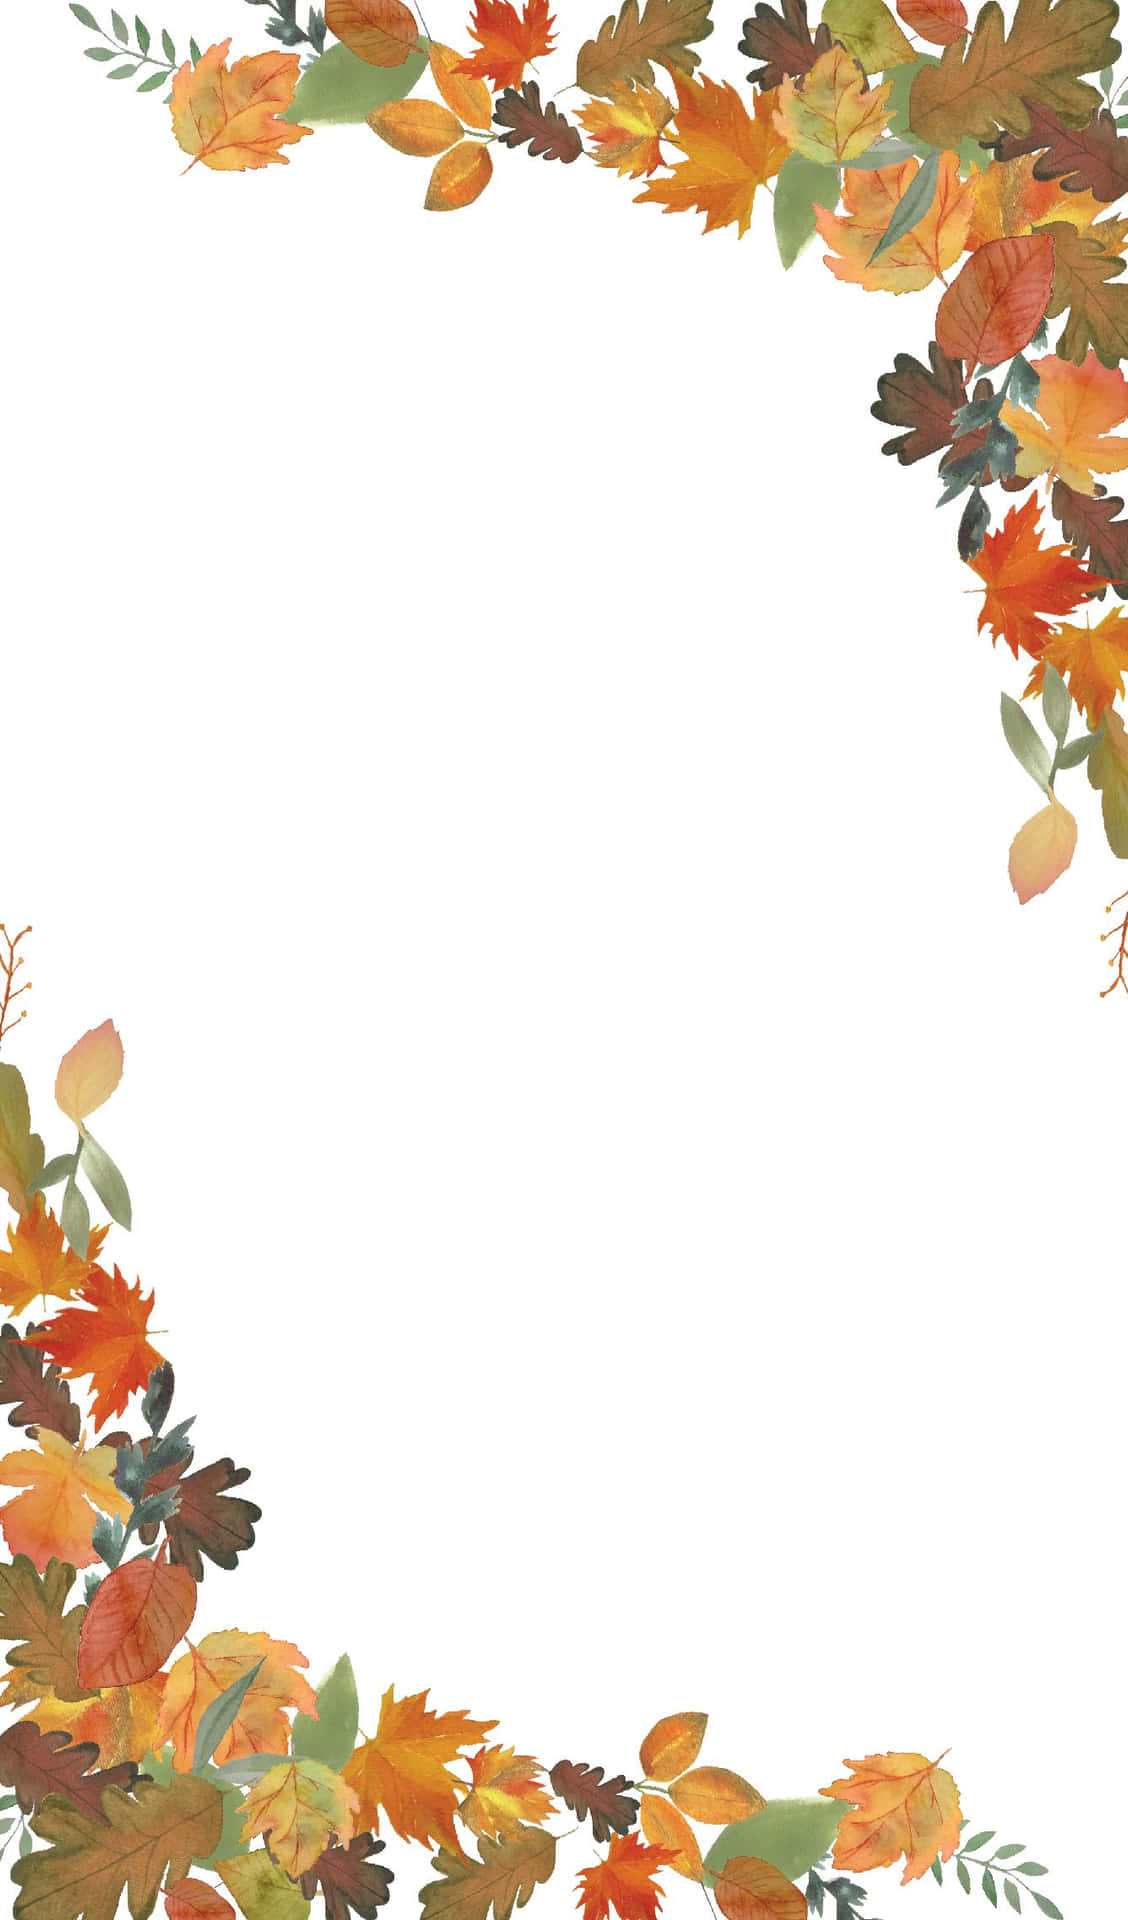 Fange et smukt og levende efterår med denne skarpe, livlige foto af efterårsblade Wallpaper